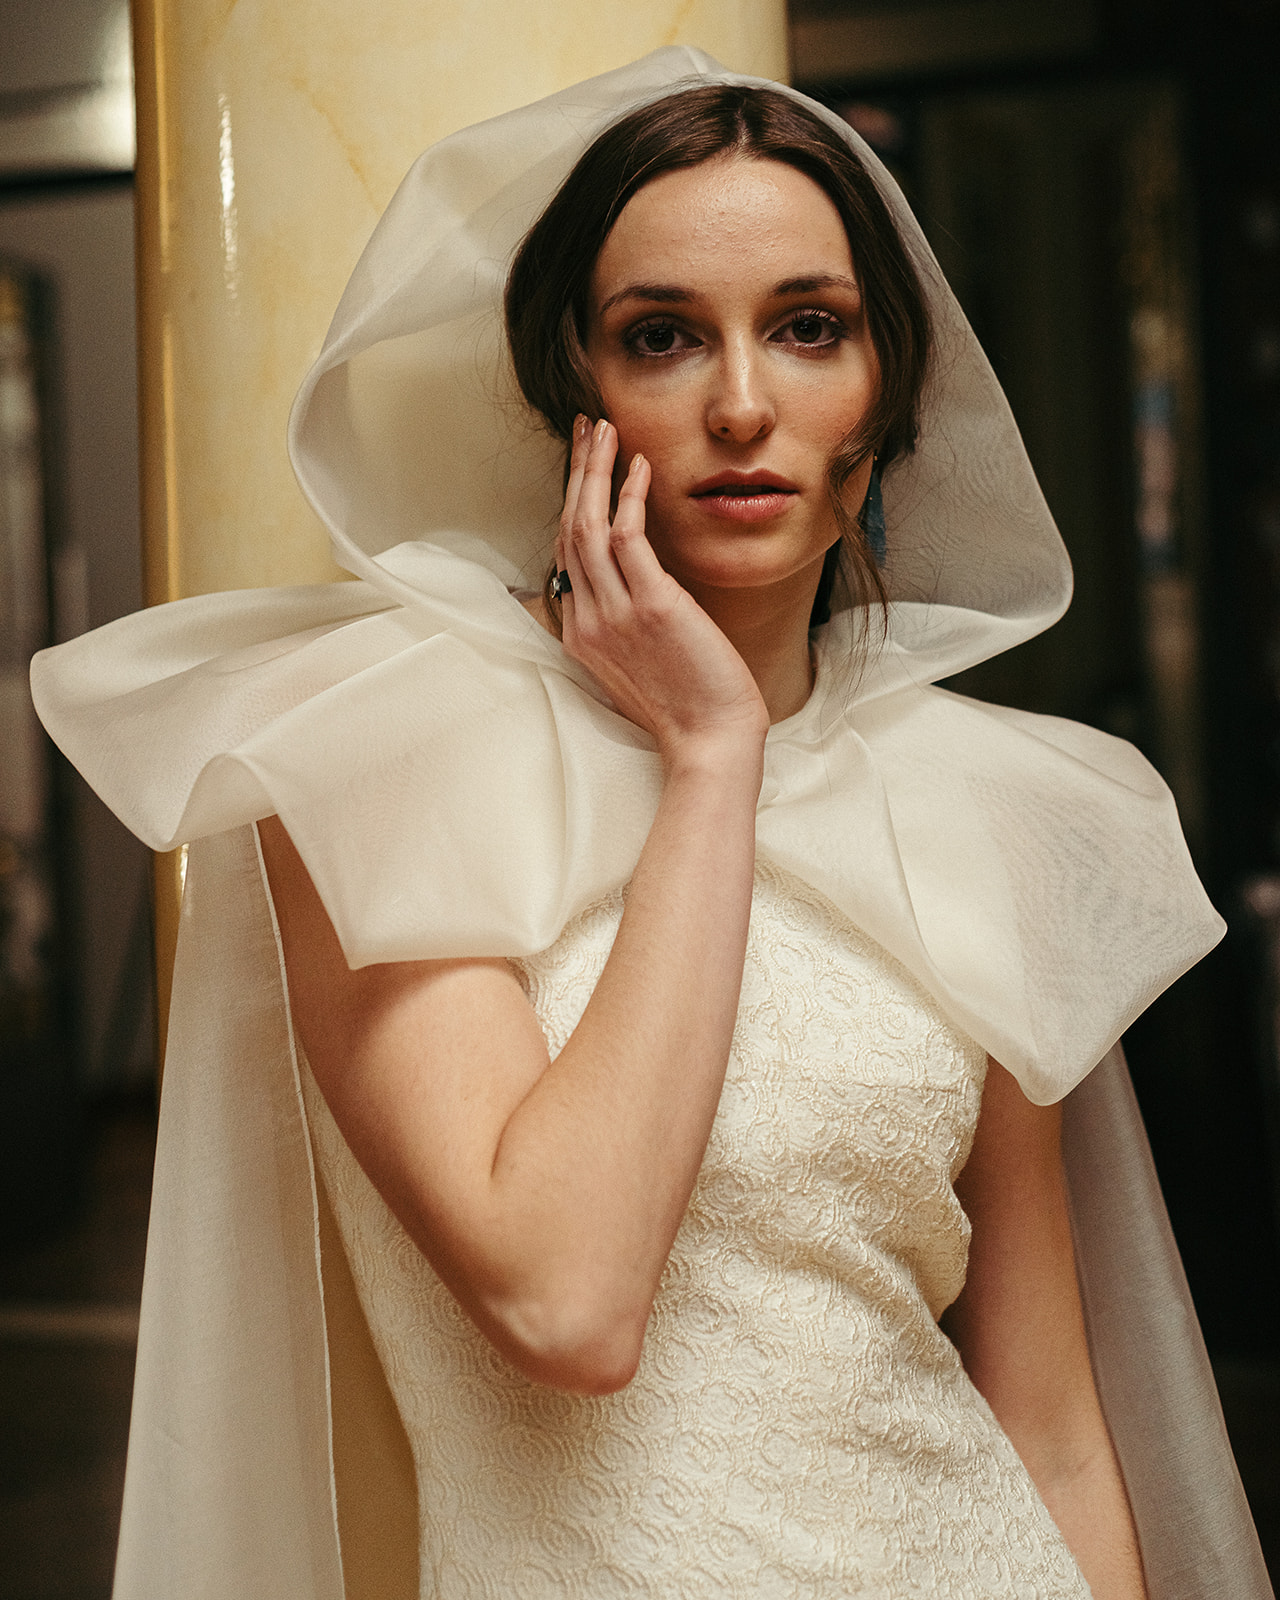 Retrato de vestido de novia editorial hecha en Zaragoza en el casino mercantil